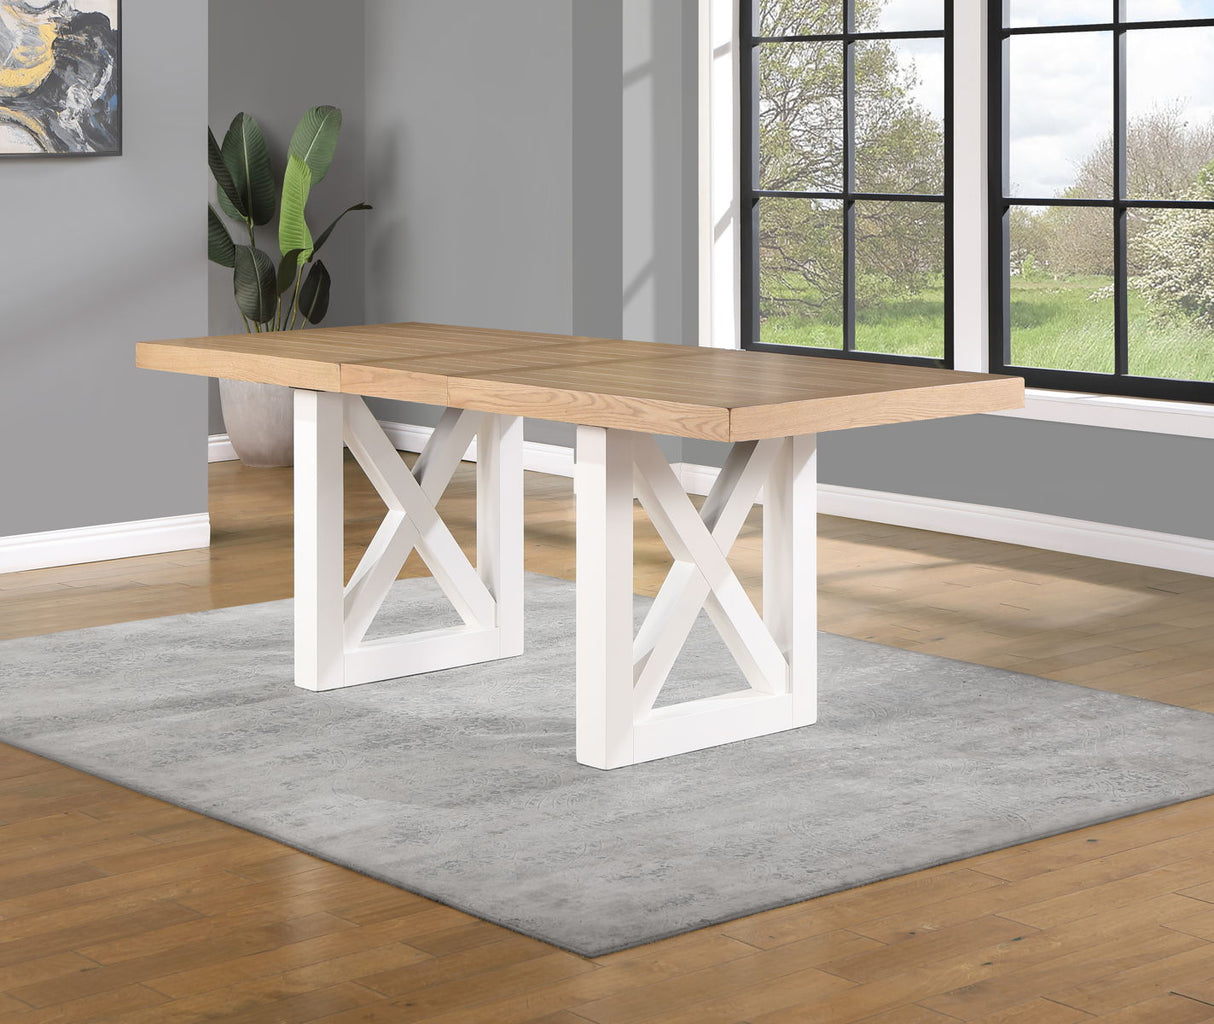 Magnolia - Counter Table